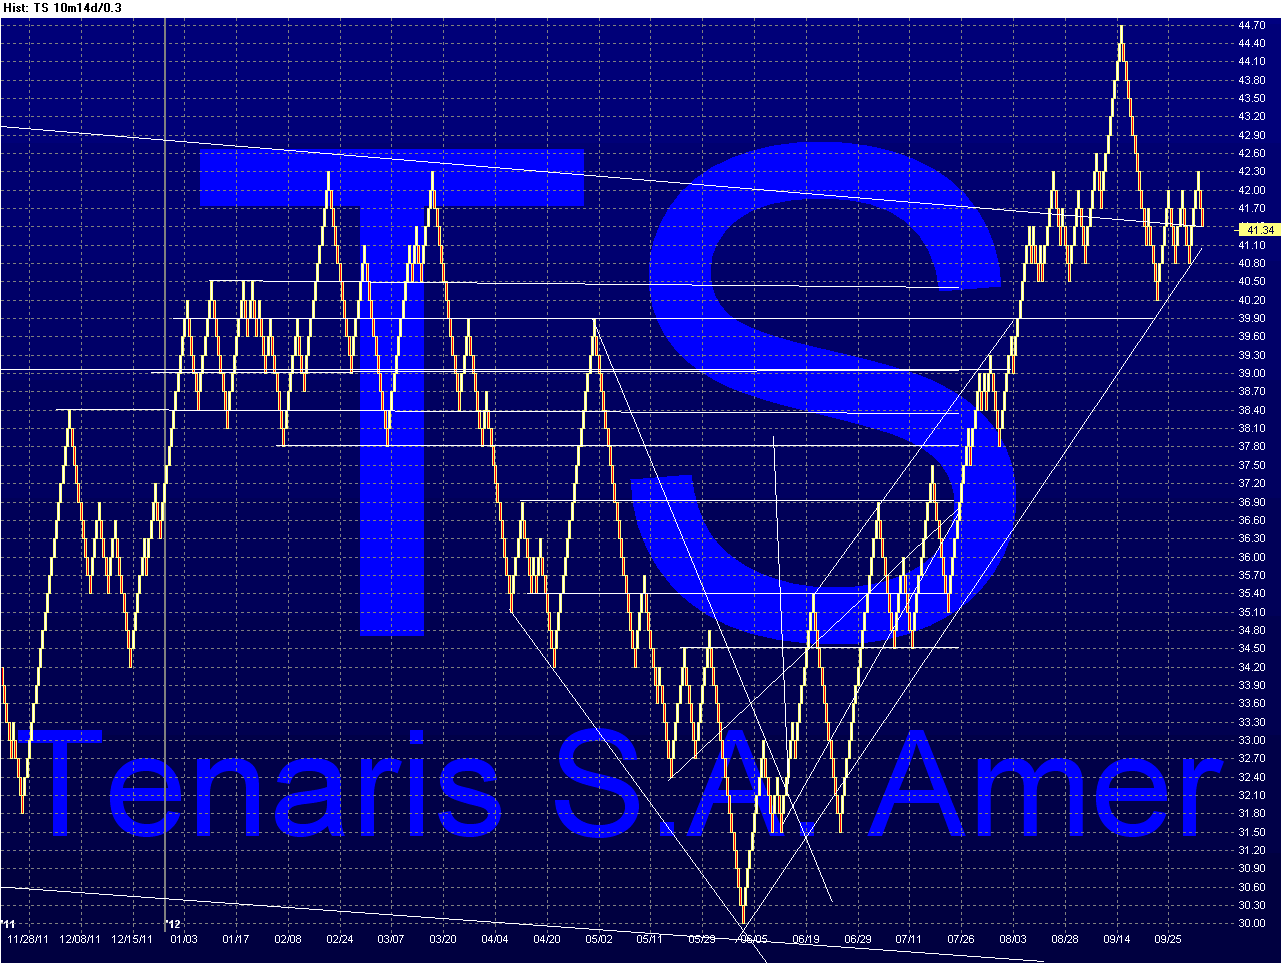 TS - Tenaris Chart_24